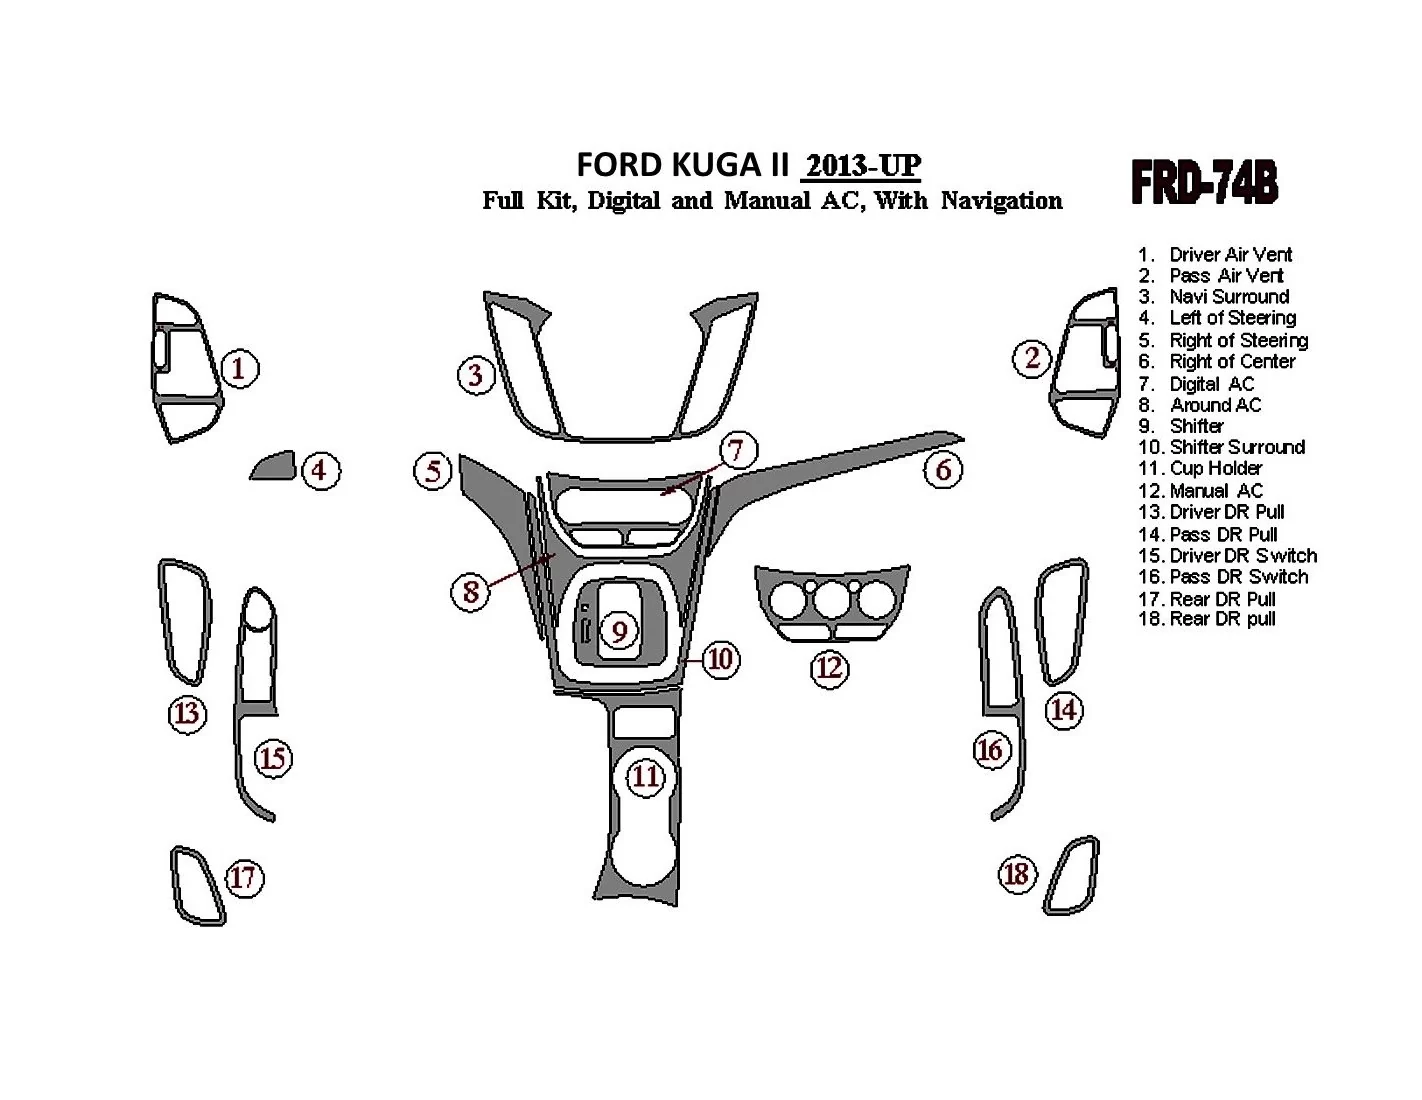 Ford Kuga 2013-UP Ensemble Complet, Avec NAVI BD Kit la décoration du tableau de bord - 1 - habillage decor de tableau de bord